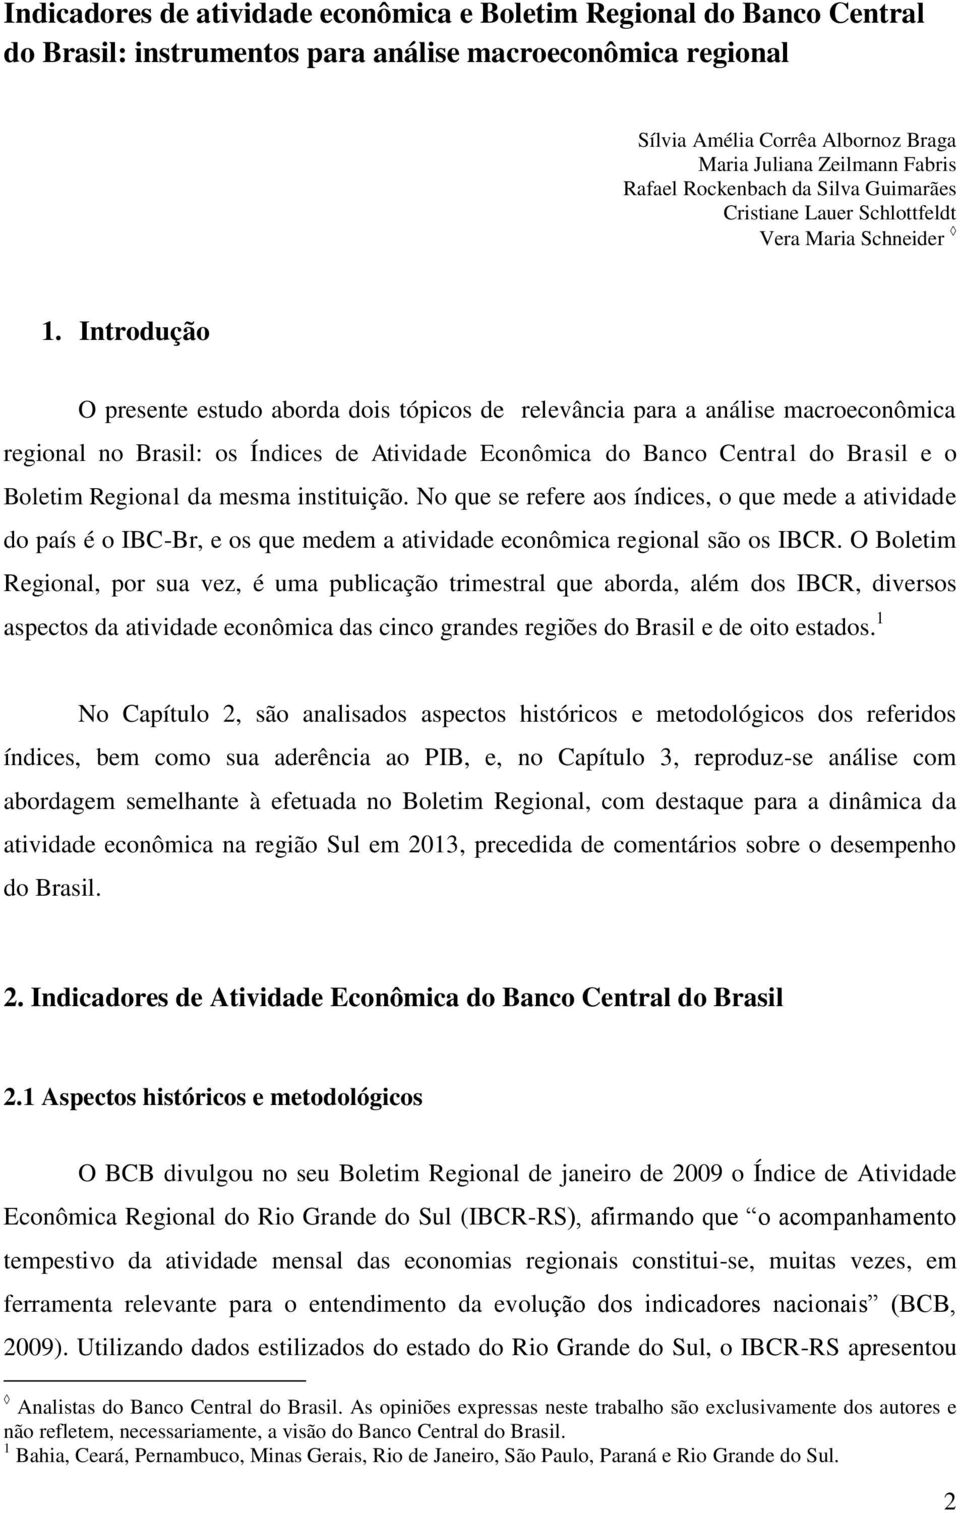 Introdução O presente estudo aborda dois tópicos de relevância para a análise macroeconômica regional no Brasil: os Índices de Atividade Econômica do Banco Central do Brasil e o Boletim Regional da